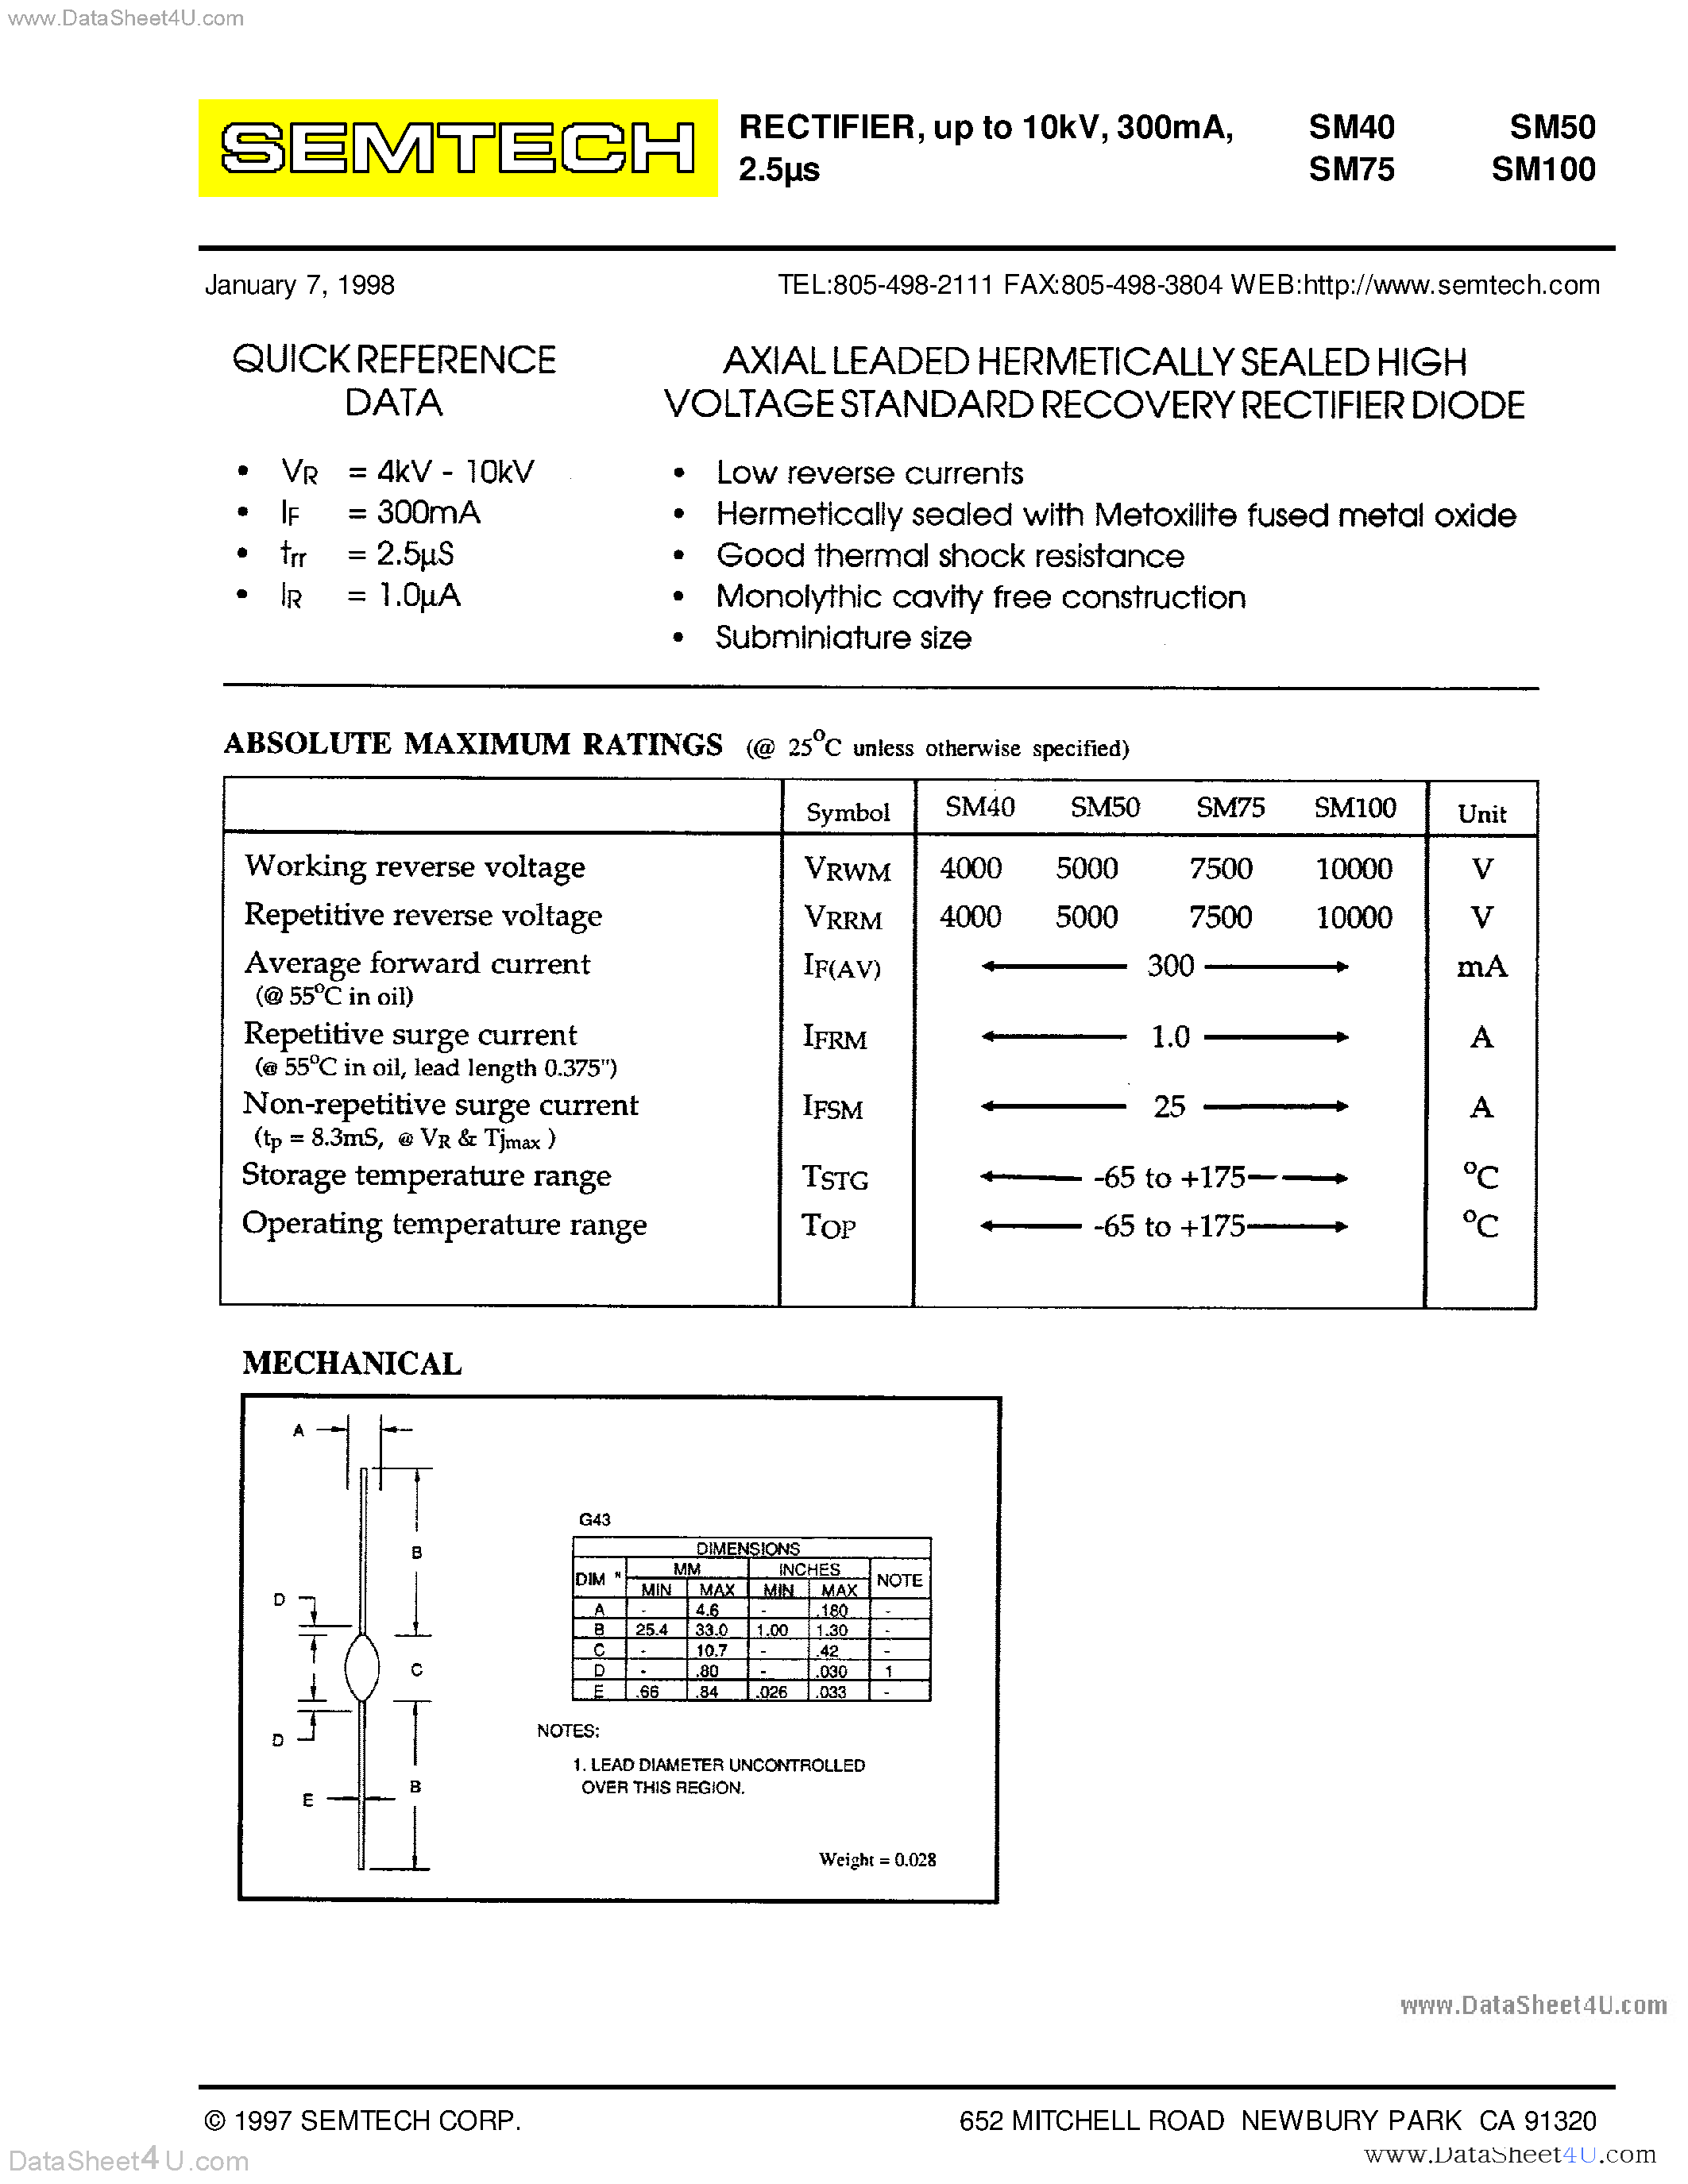 Datasheet SM100 - Rectifier Diode page 1